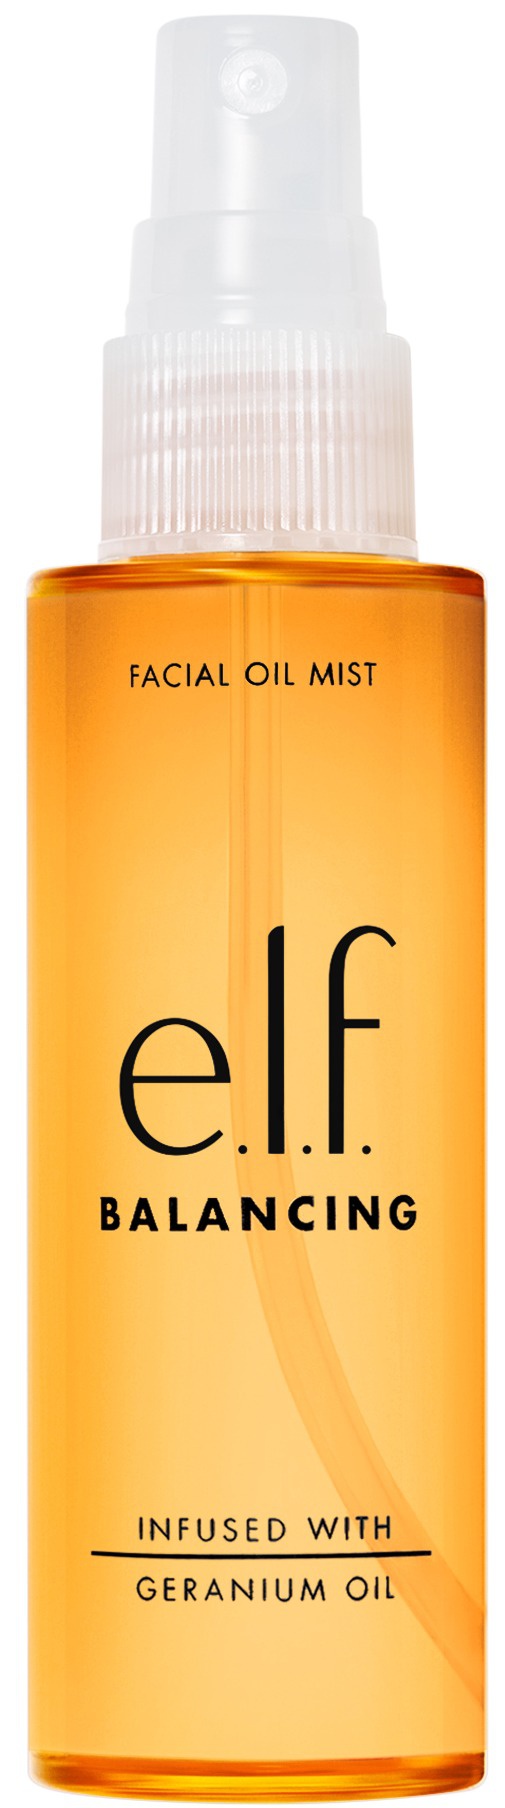 e.l.f. Facial Oil Mist Balancing